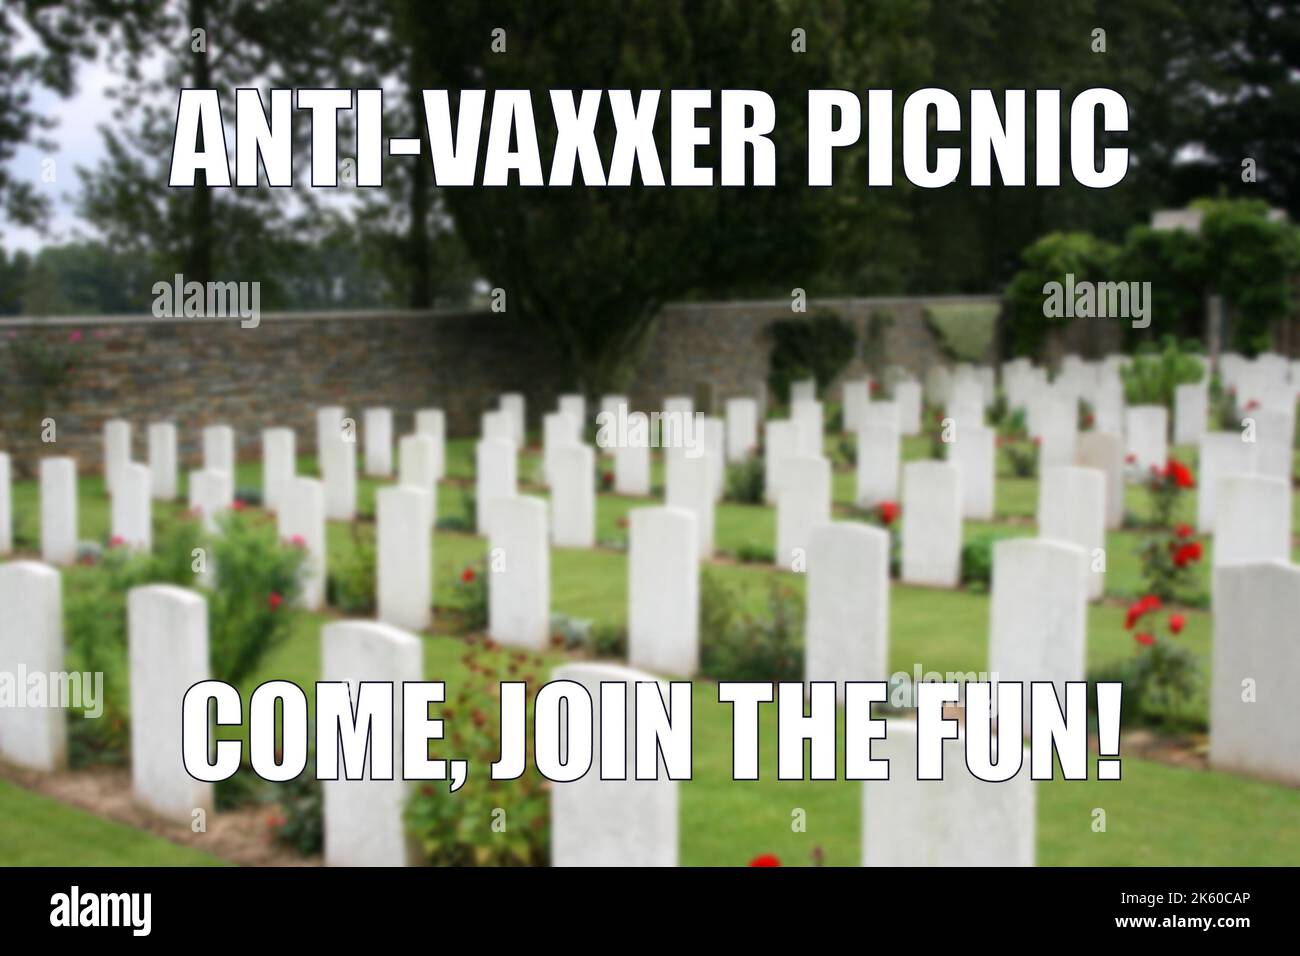 Cimitero anti-vaxxer umorismo scuro divertente meme per la condivisione dei social media. Umorismo nero sullo scetticismo dei vaccini e sulla negazione delle vaccinazioni. Foto Stock